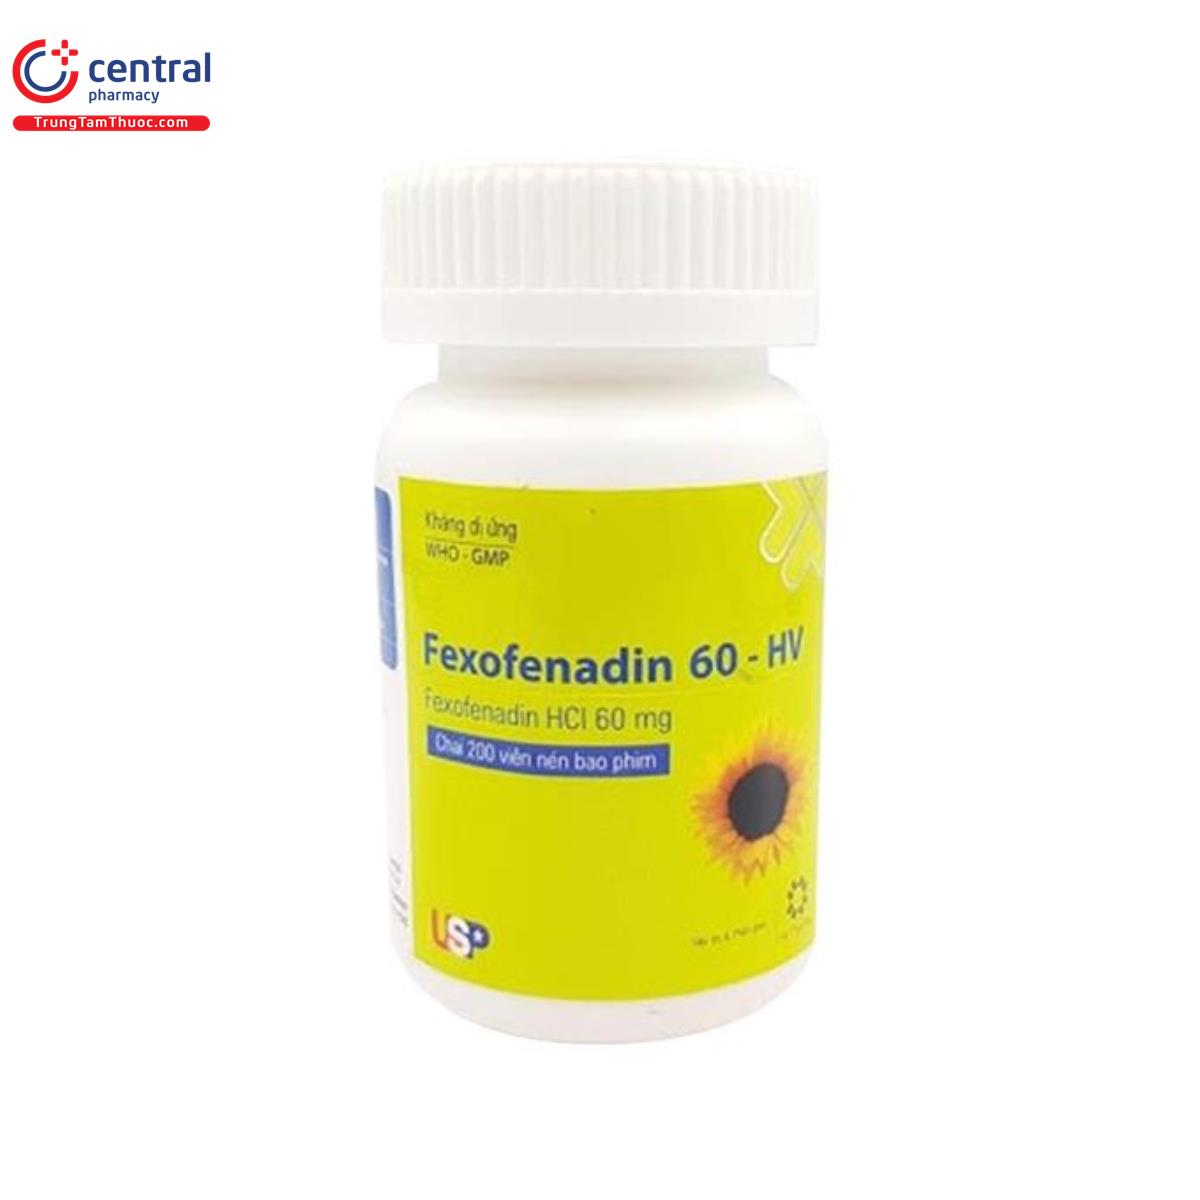 fexofenadine 60 hv 3 K4017